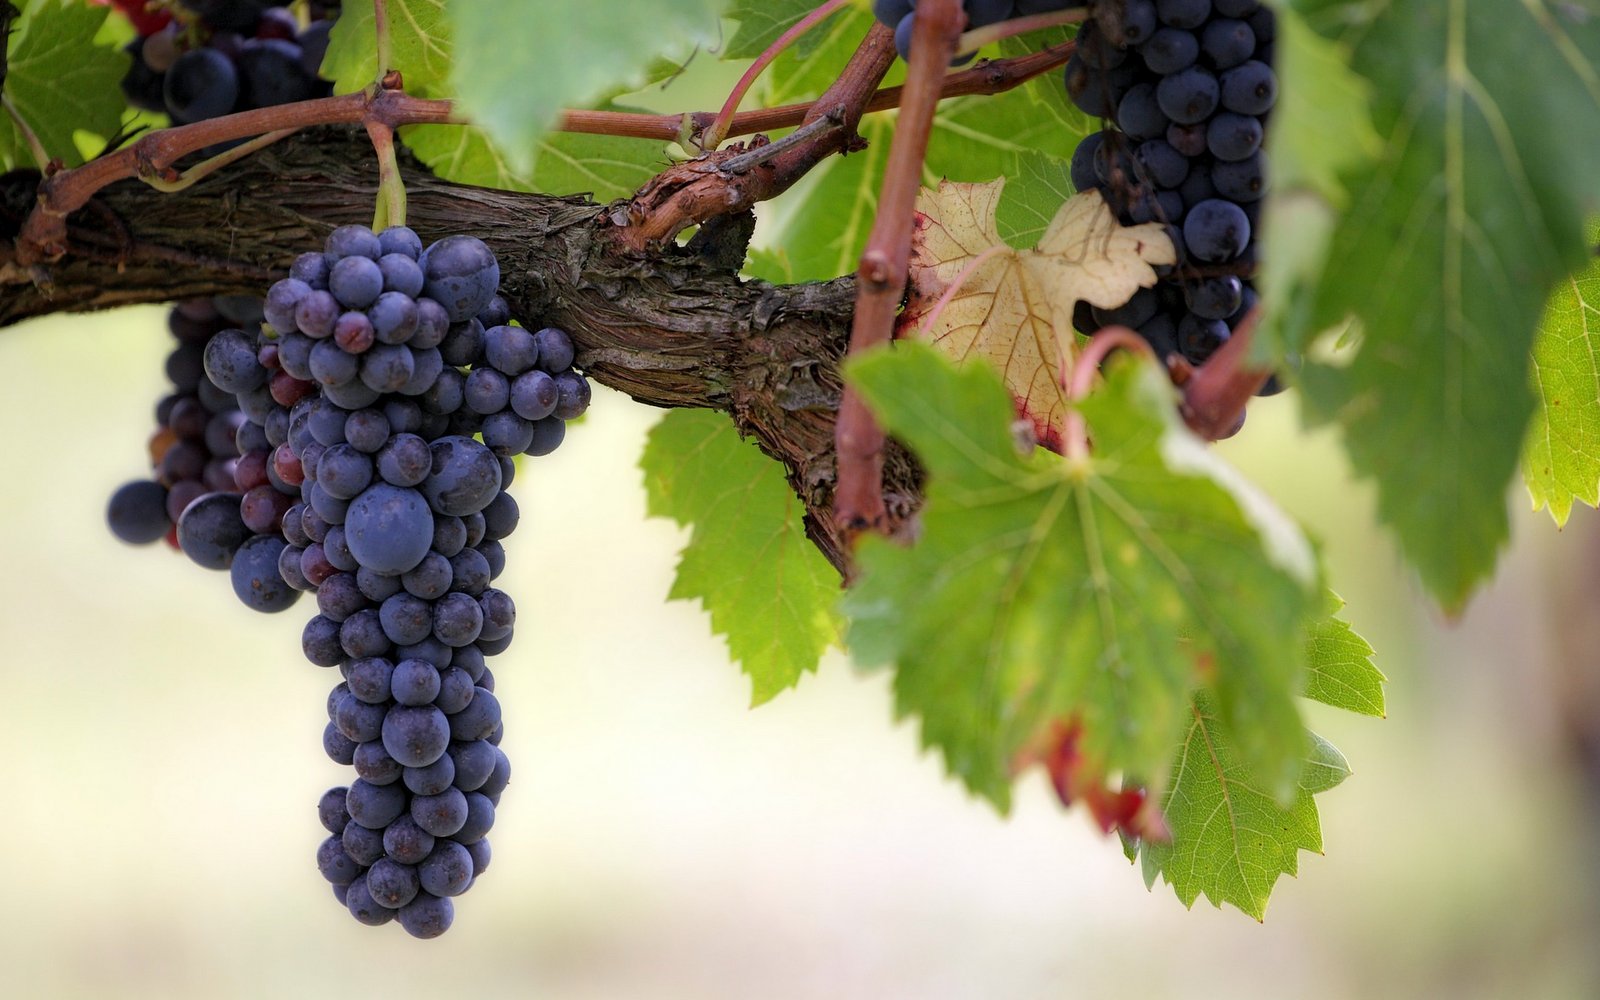 Vinná réva, vinný kmen, vinice, hrozno / Foto Joe - Pixabay.com